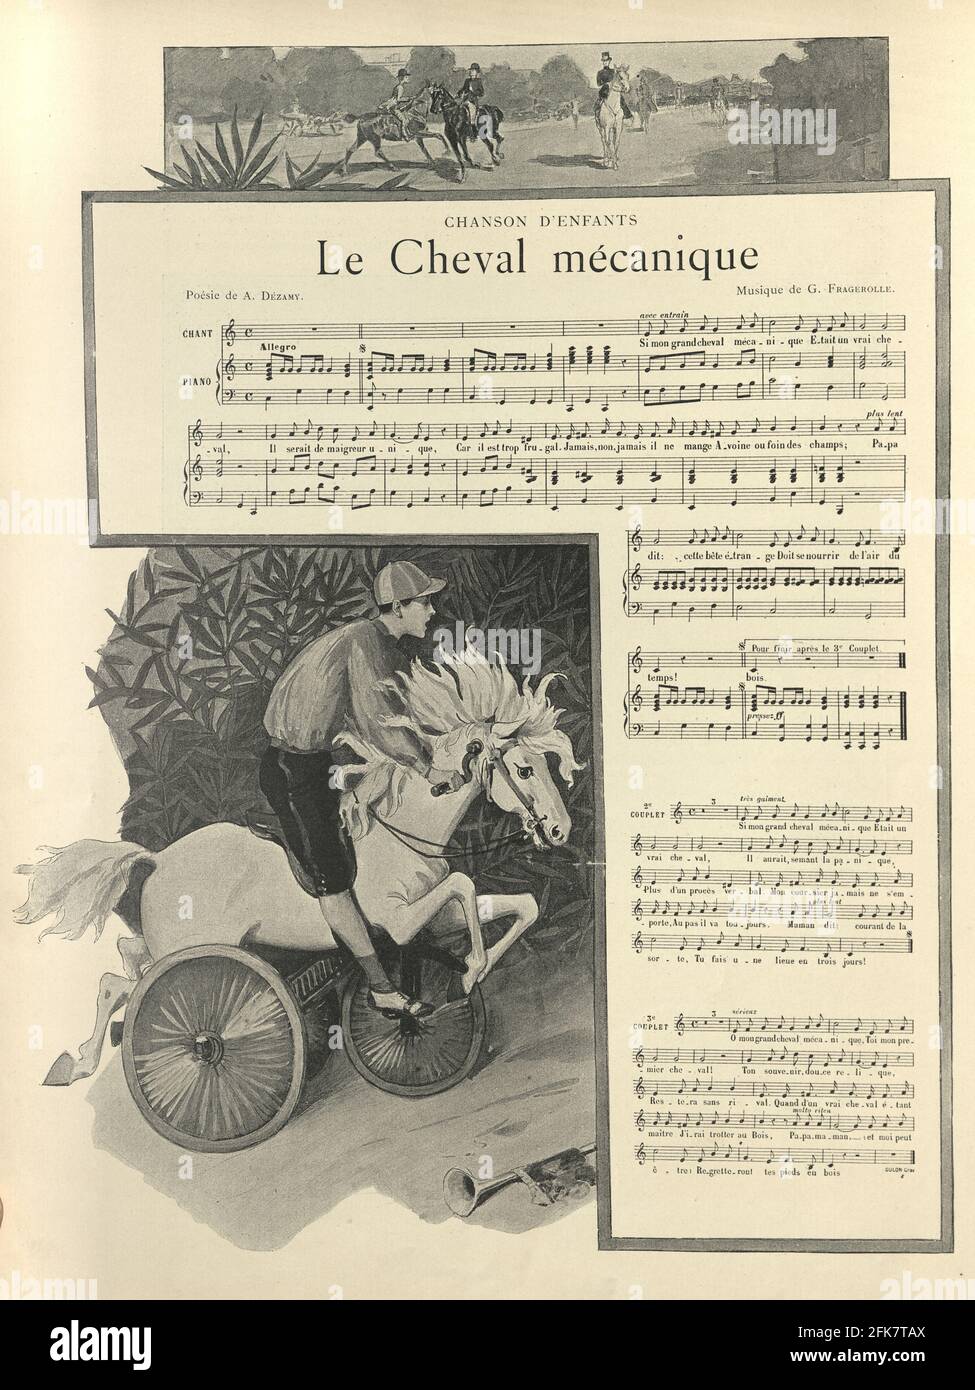 Le Cheval mecanique, le cheval mécanique, feuille de musique victorienne, 1890, 19e siècle Banque D'Images